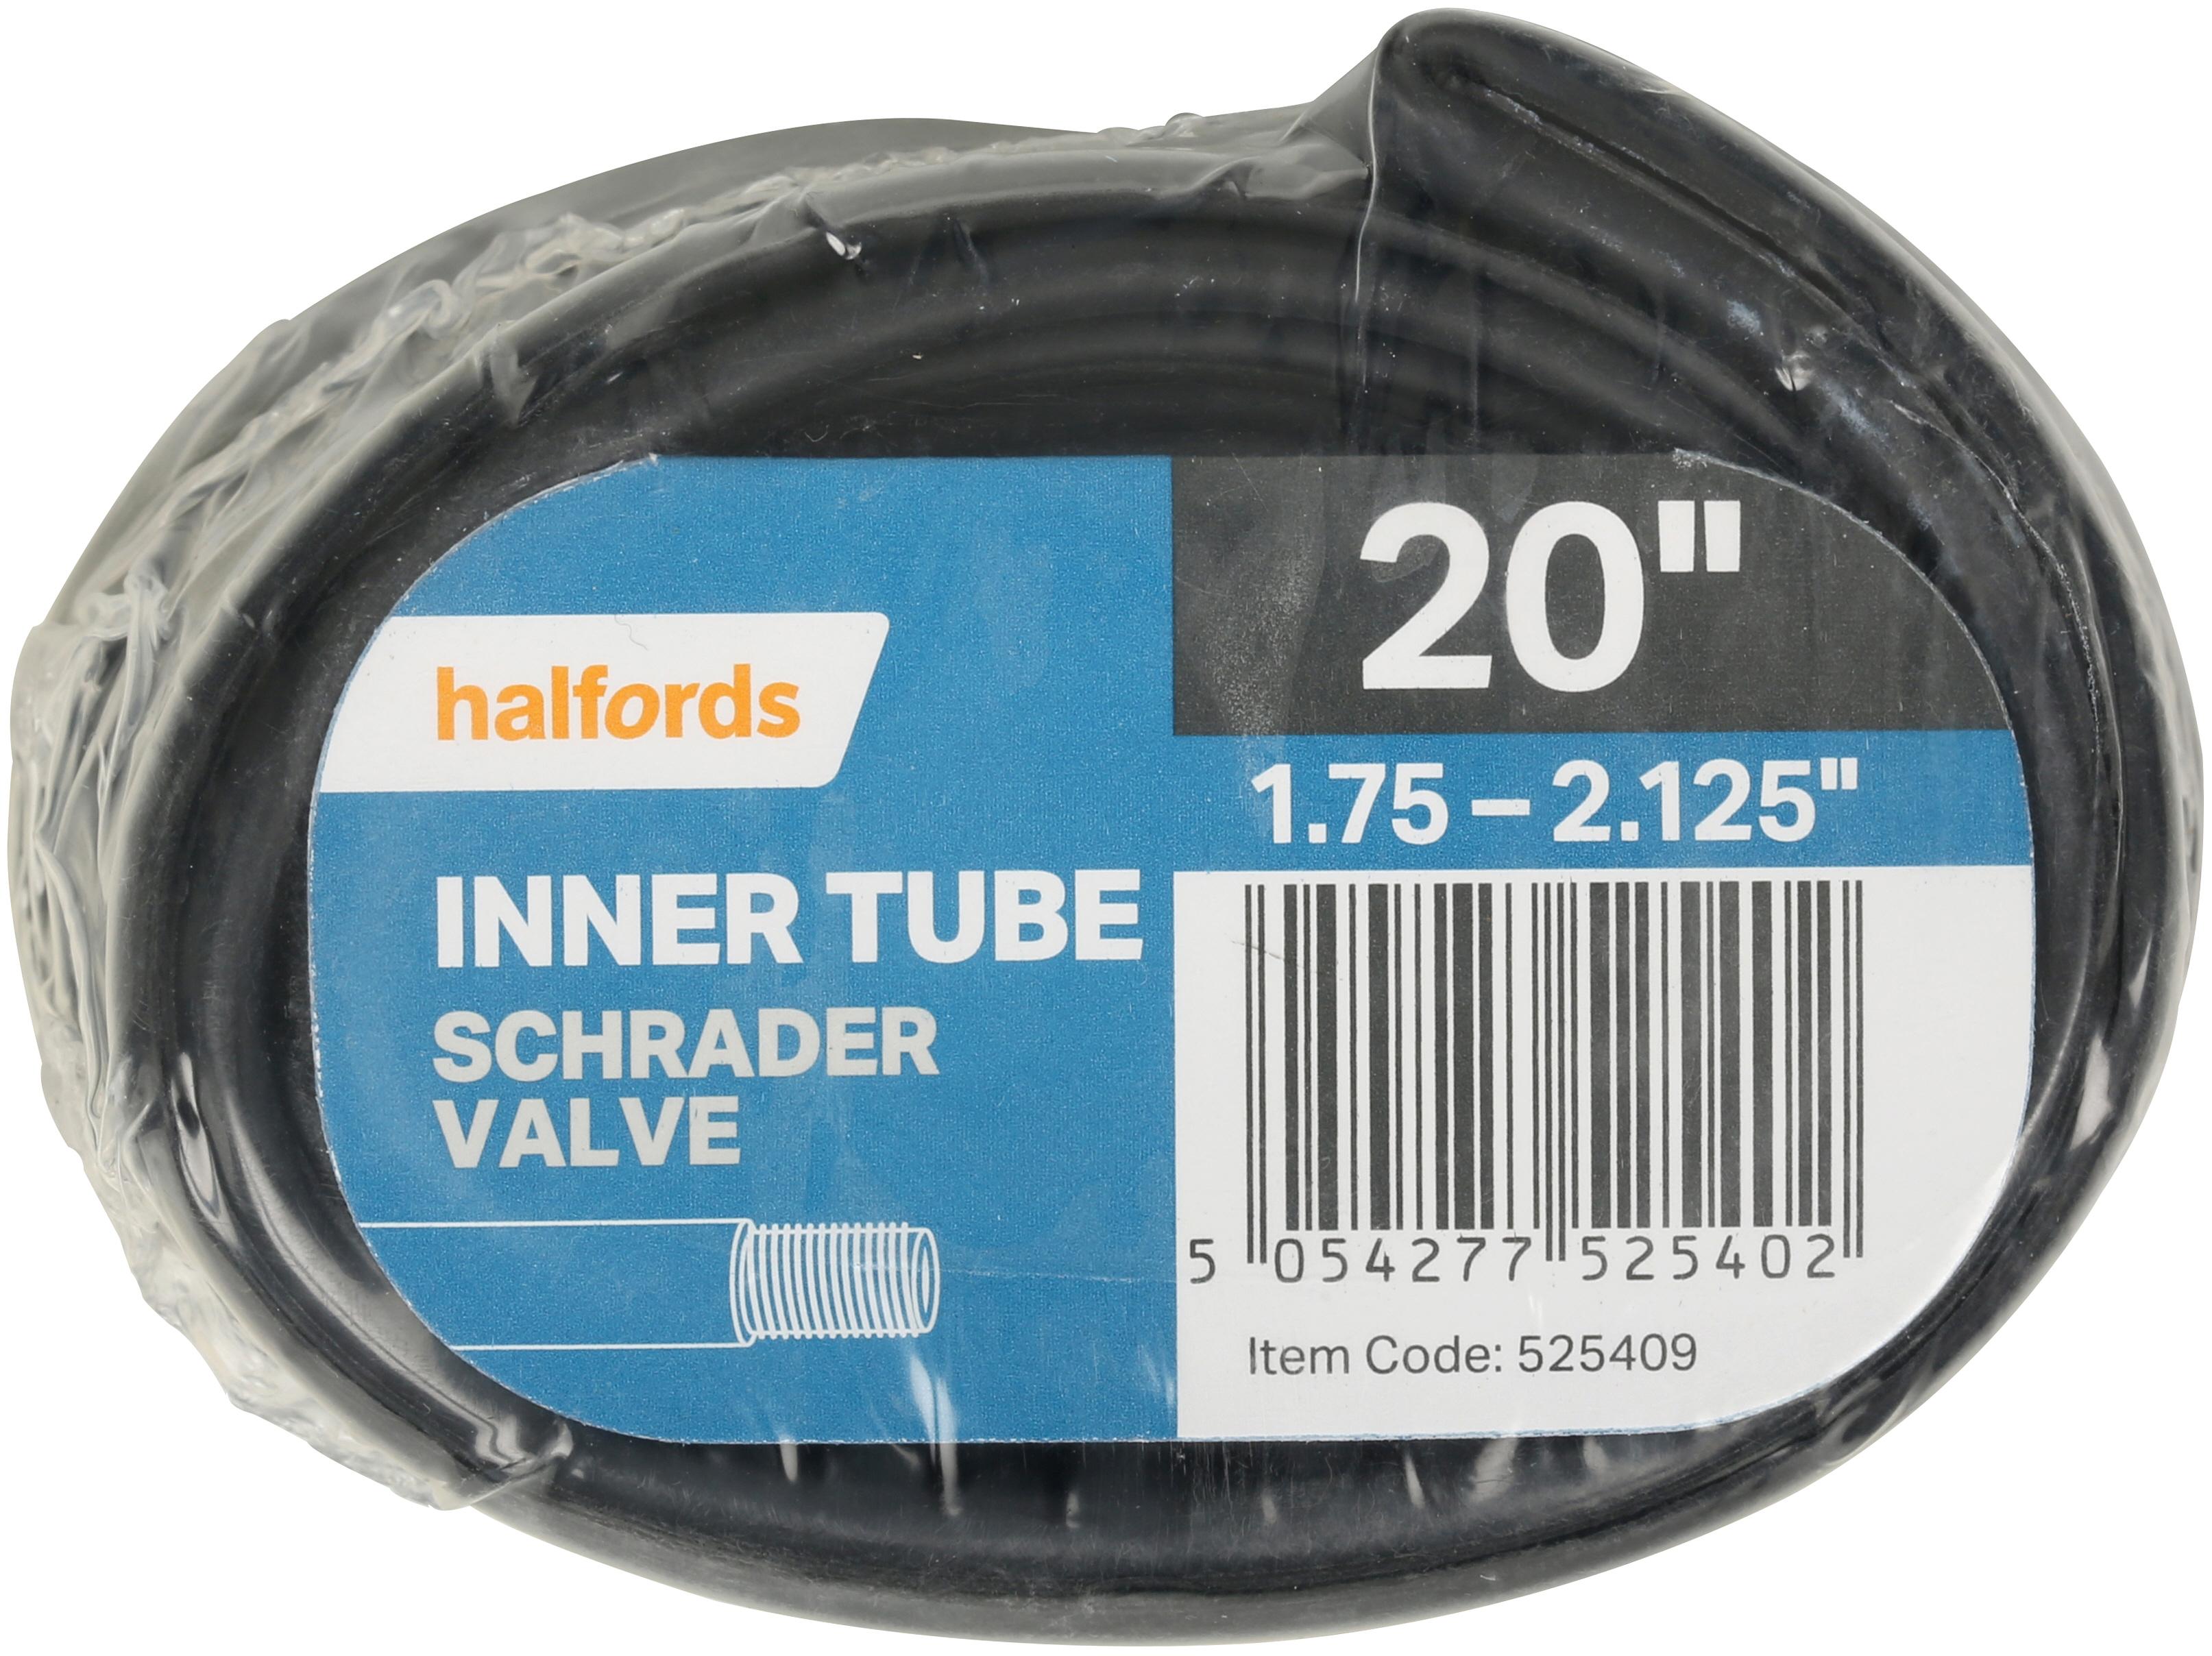 Halfords Bike Inner Tube, 20 Inch X 1.75 - 2.125 Inch, Schrader